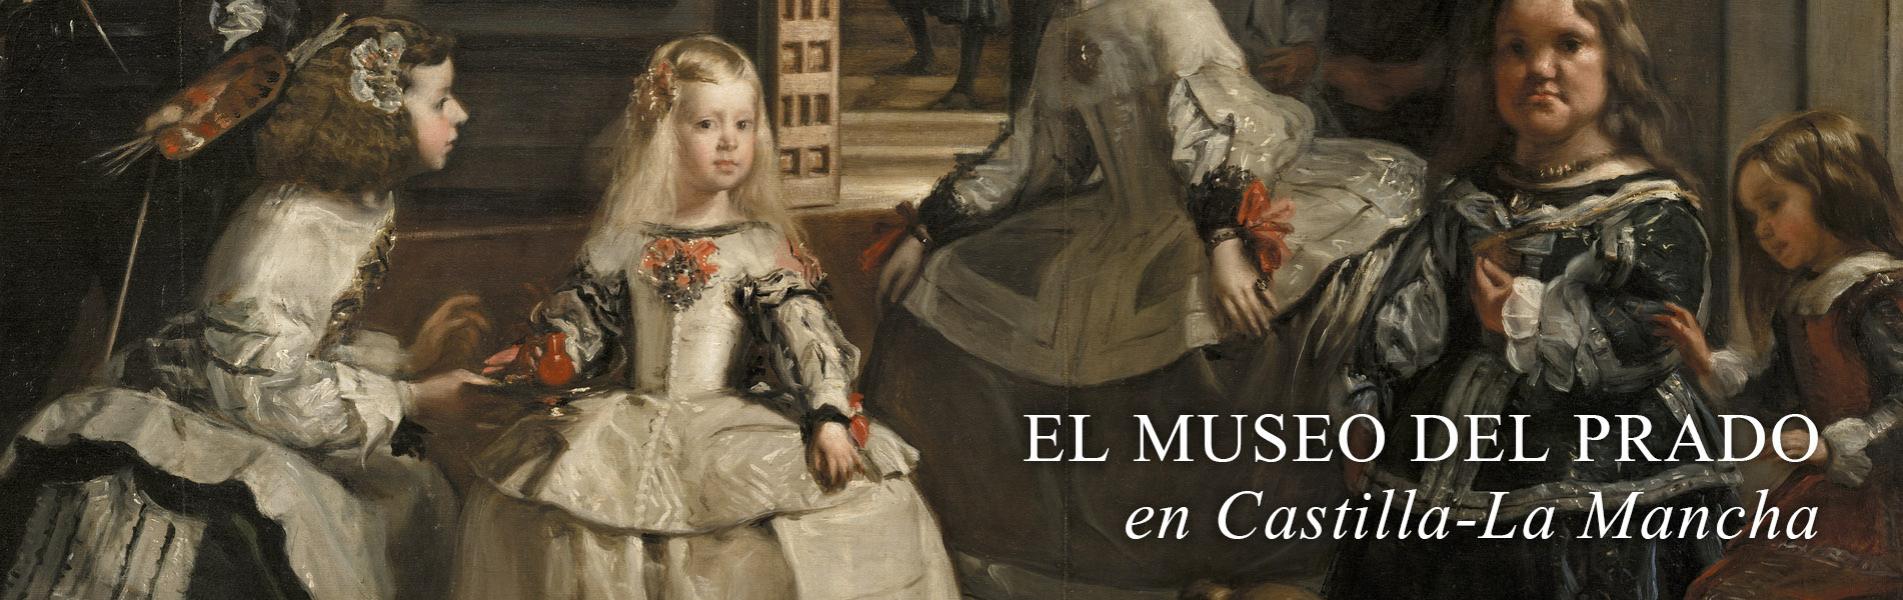 ct El Museo del Prado en Castilla-La Mancha 